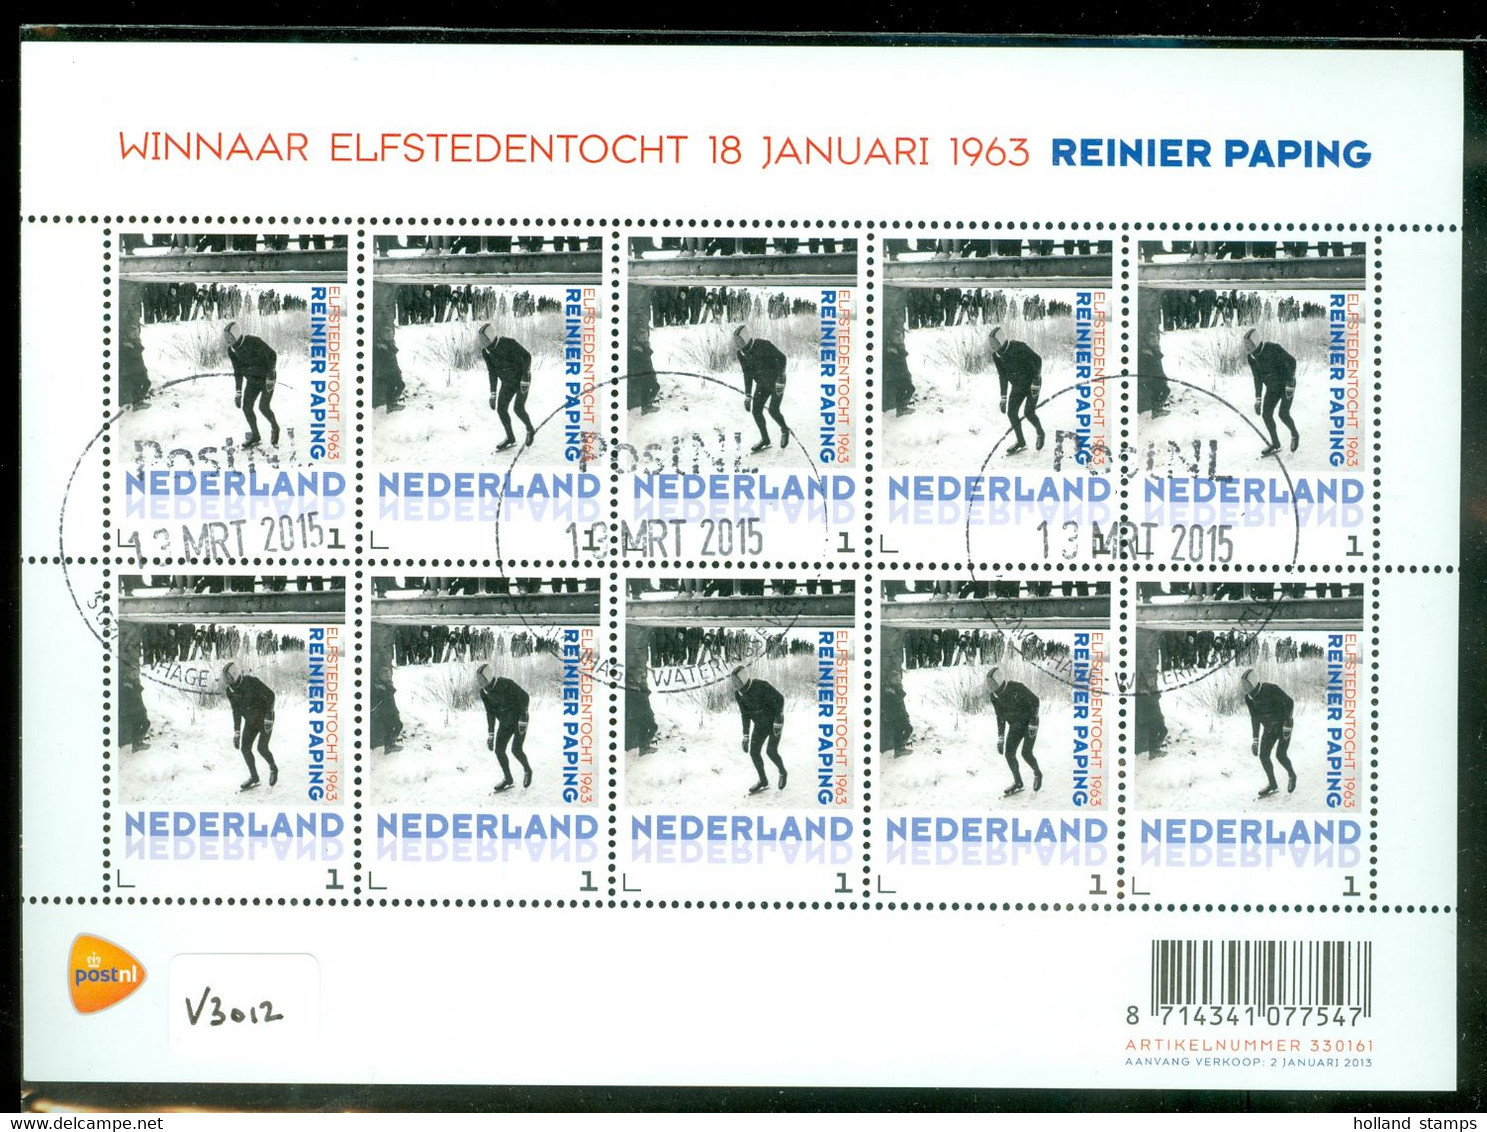 Nederland 2013 * V 3012 * POSTFRIS GESTEMPELD  * BLOK * ELFSTEDENTOCHT * SCHAATSEN * REINIER PAPING * C.W. EURO 20,00 - Used Stamps